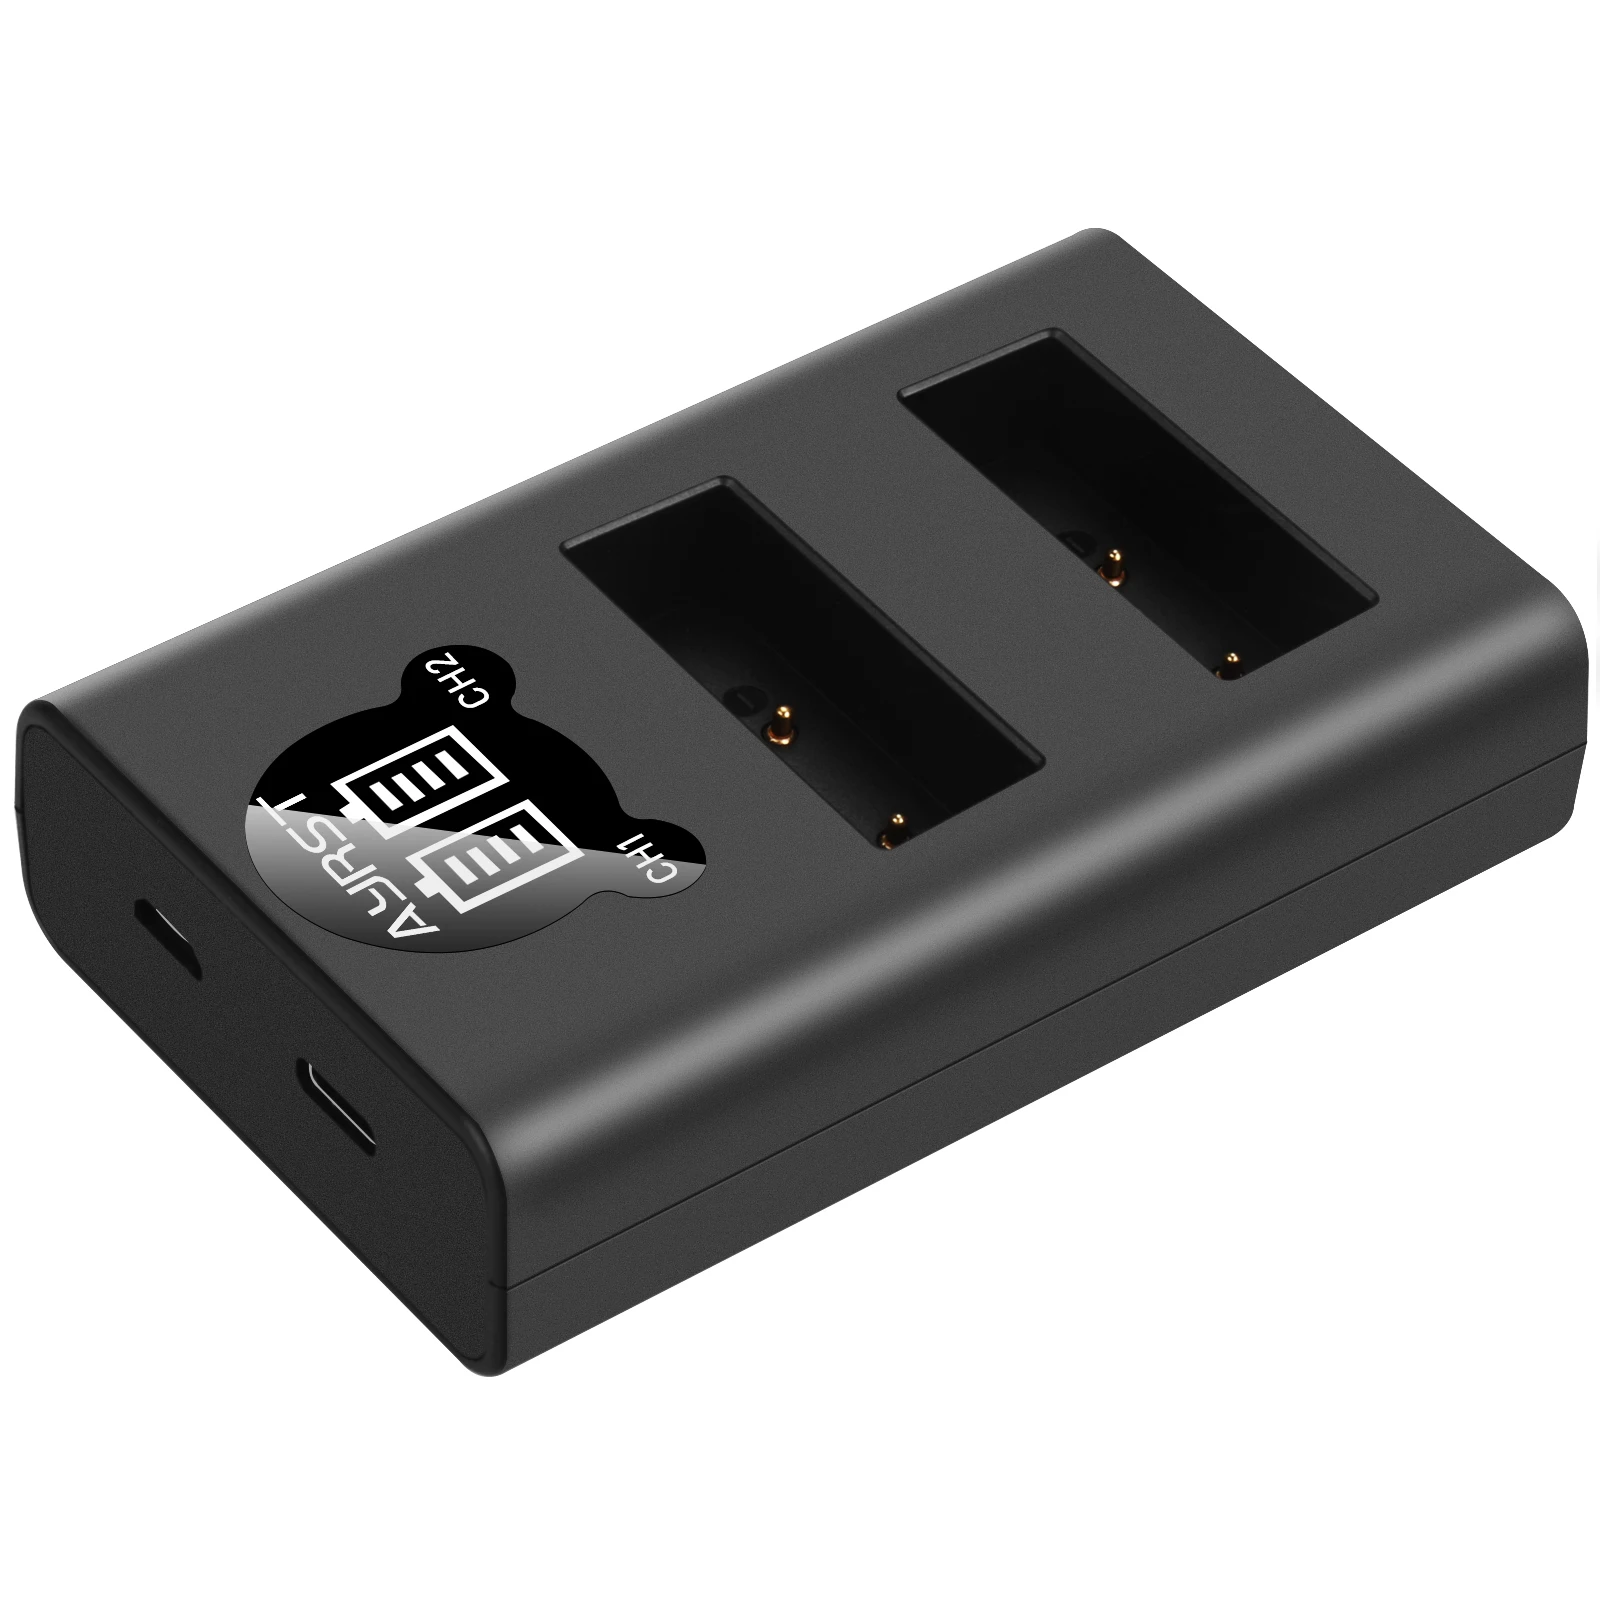 BLS-5 BLS5 Bls50 Dvojno USB Polnilnik zaslon za Olympus OM-D E-M10, PEN E-PL2, E-PL5 in E-PL6 E-PL7 E-PL8 E-PM2